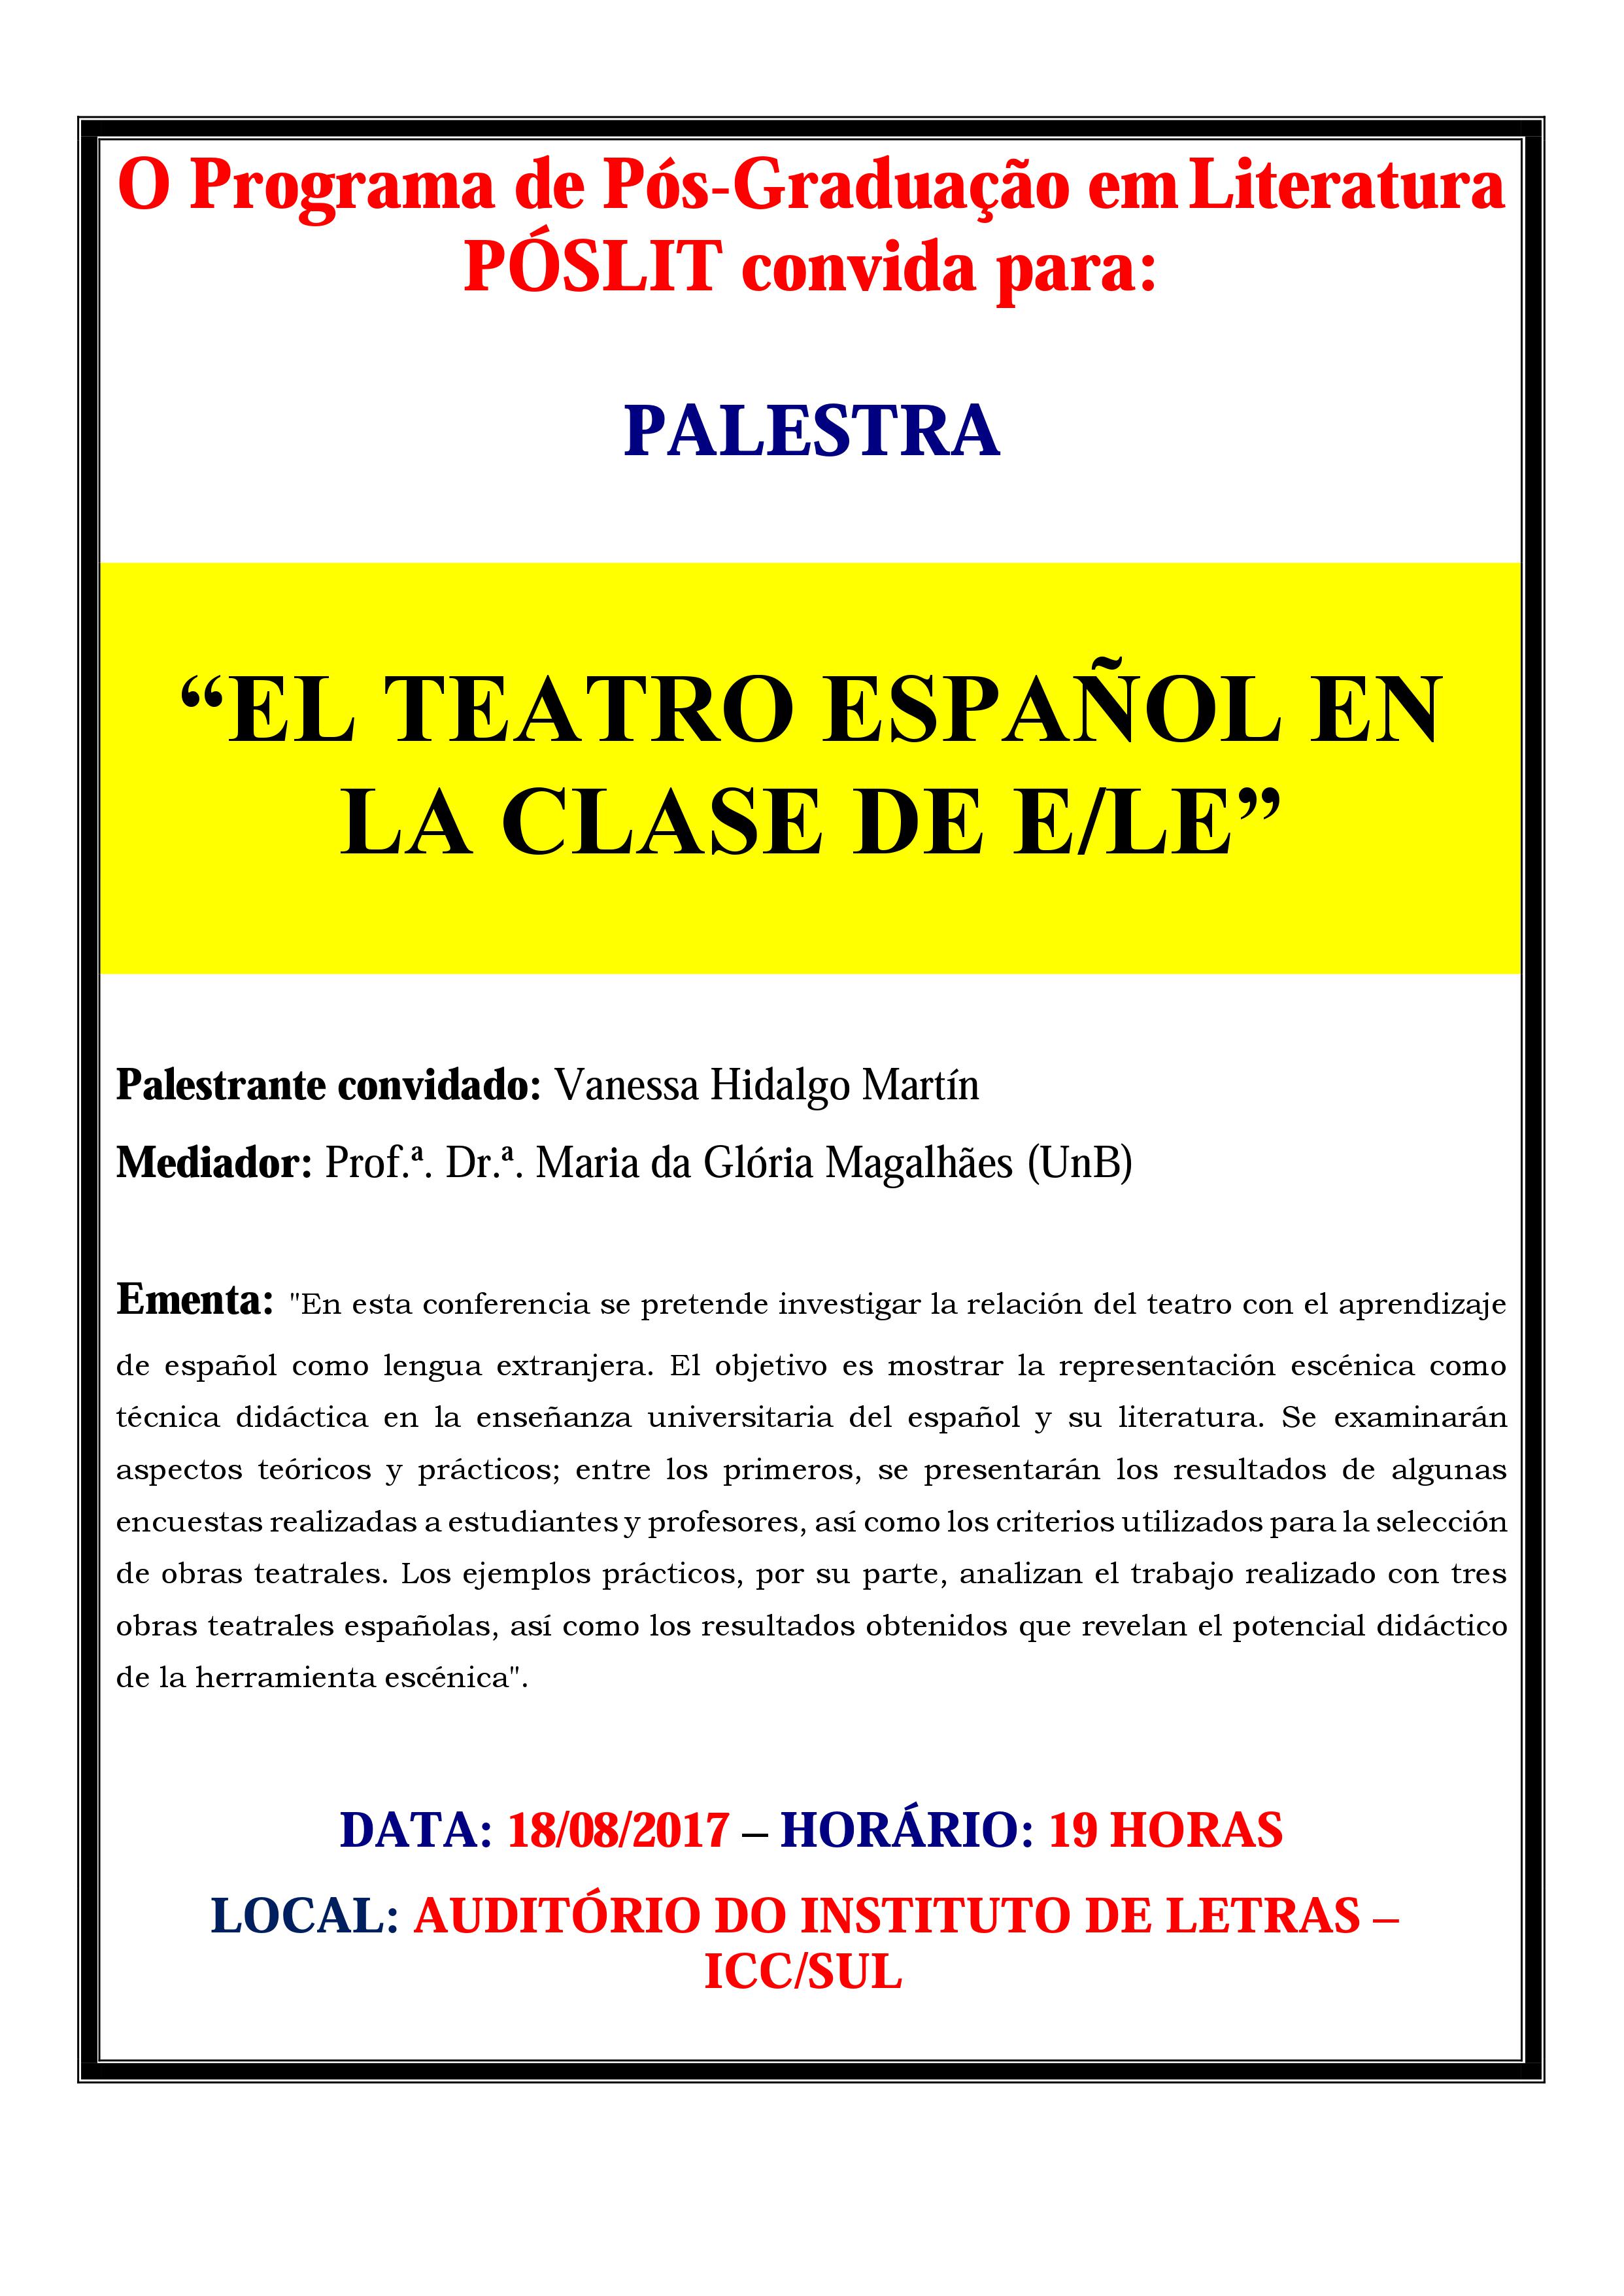 Palestra: El teatro español en la clase de e/le